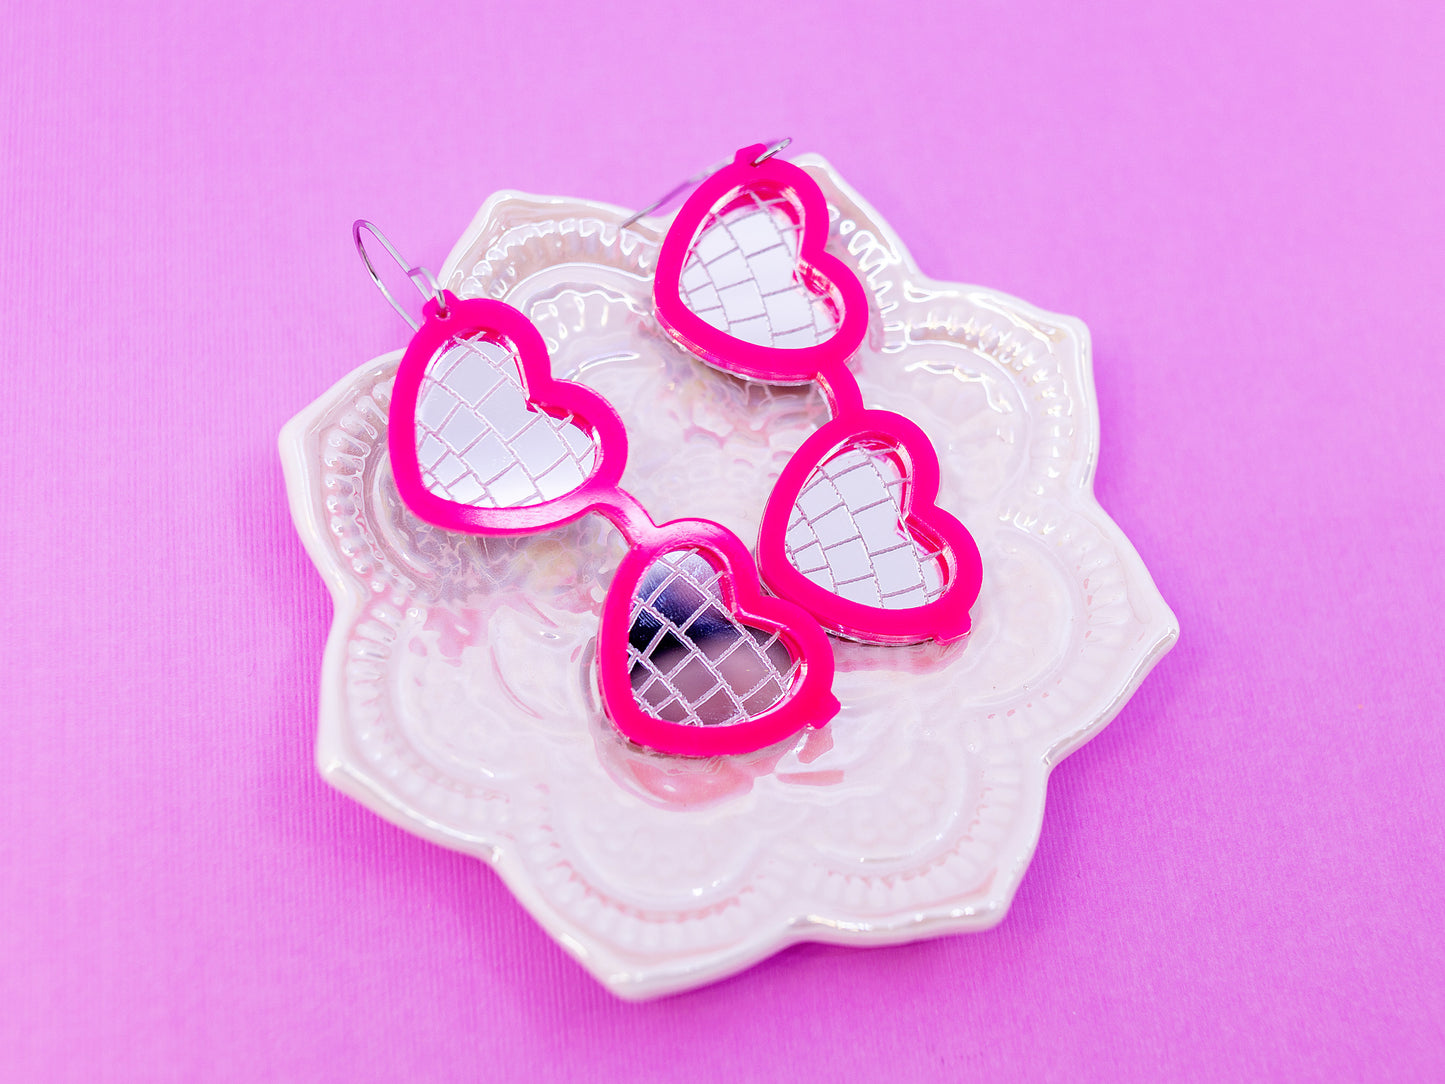 Valentine Earrings - Heart Sunglasses Earrings - Heart Disco Earrings - Acrylic Earrings Pink